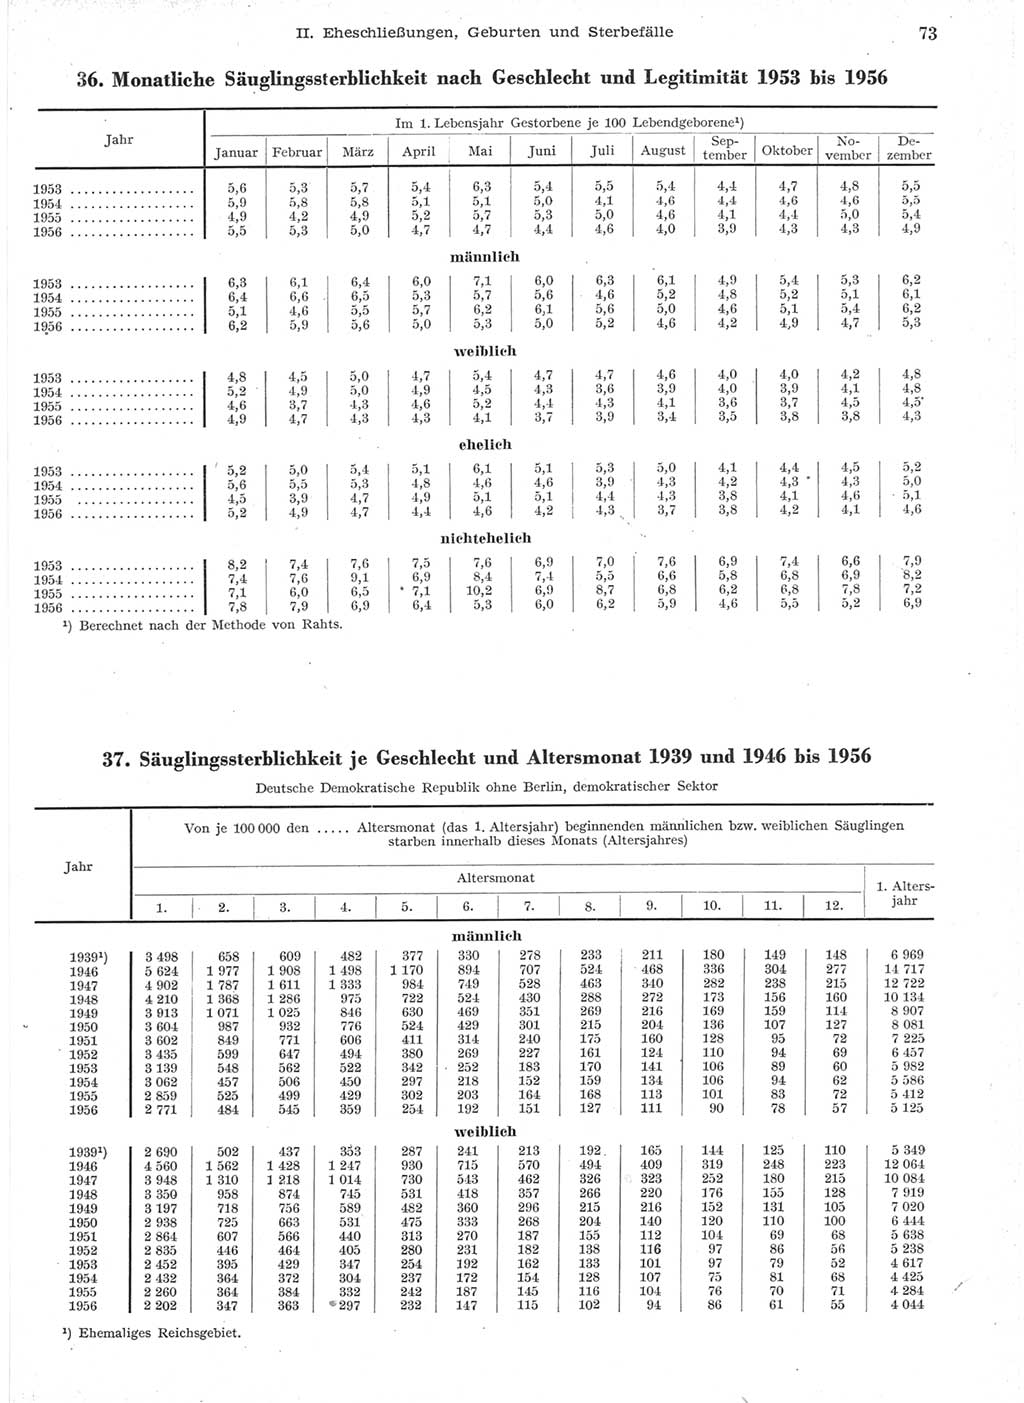 Statistisches Jahrbuch der Deutschen Demokratischen Republik (DDR) 1957, Seite 73 (Stat. Jb. DDR 1957, S. 73)